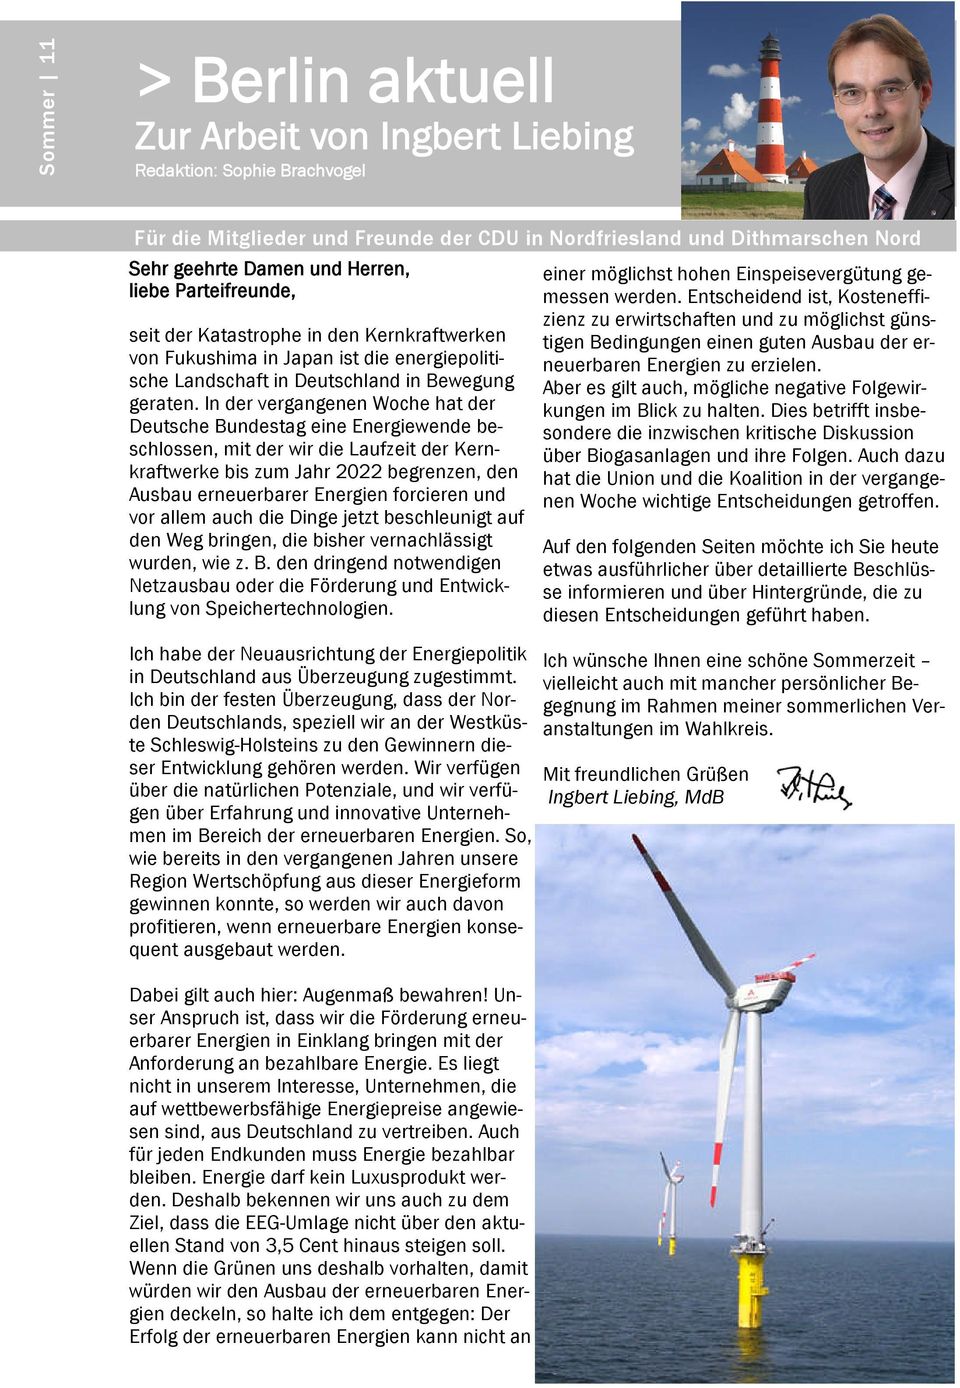 In der vergangenen Woche hat der Deutsche Bundestag eine Energiewende beschlossen, mit der wir die Laufzeit der Kernkraftwerke bis zum Jahr 2022 begrenzen, den Ausbau erneuerbarer Energien forcieren